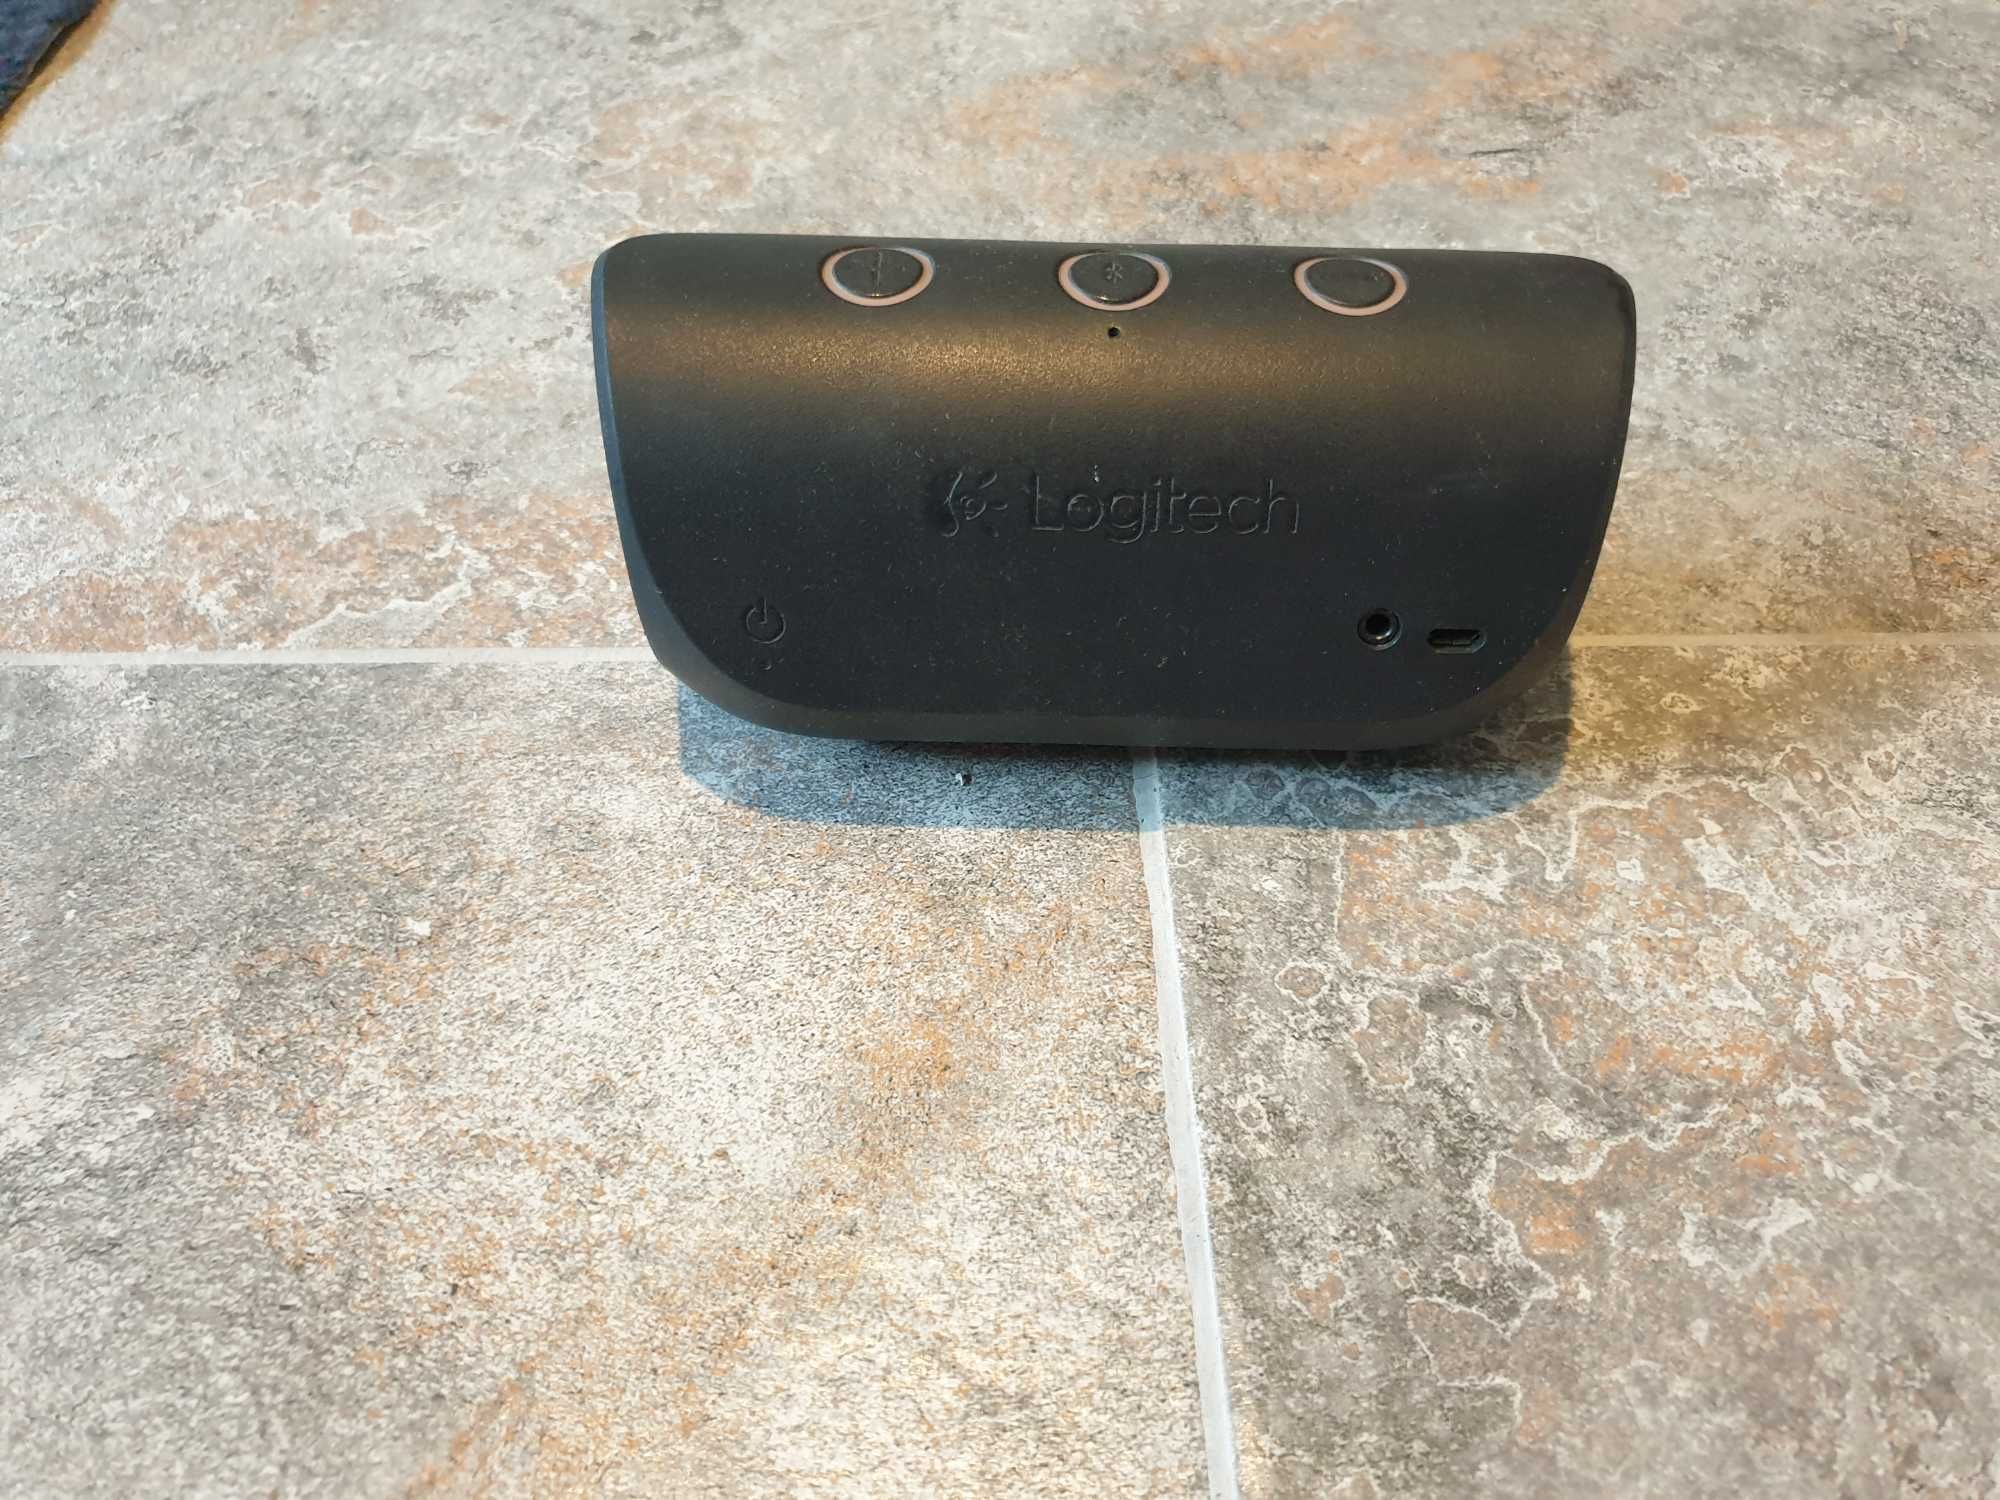 Boxa portabila wireless Logitech X300, Black